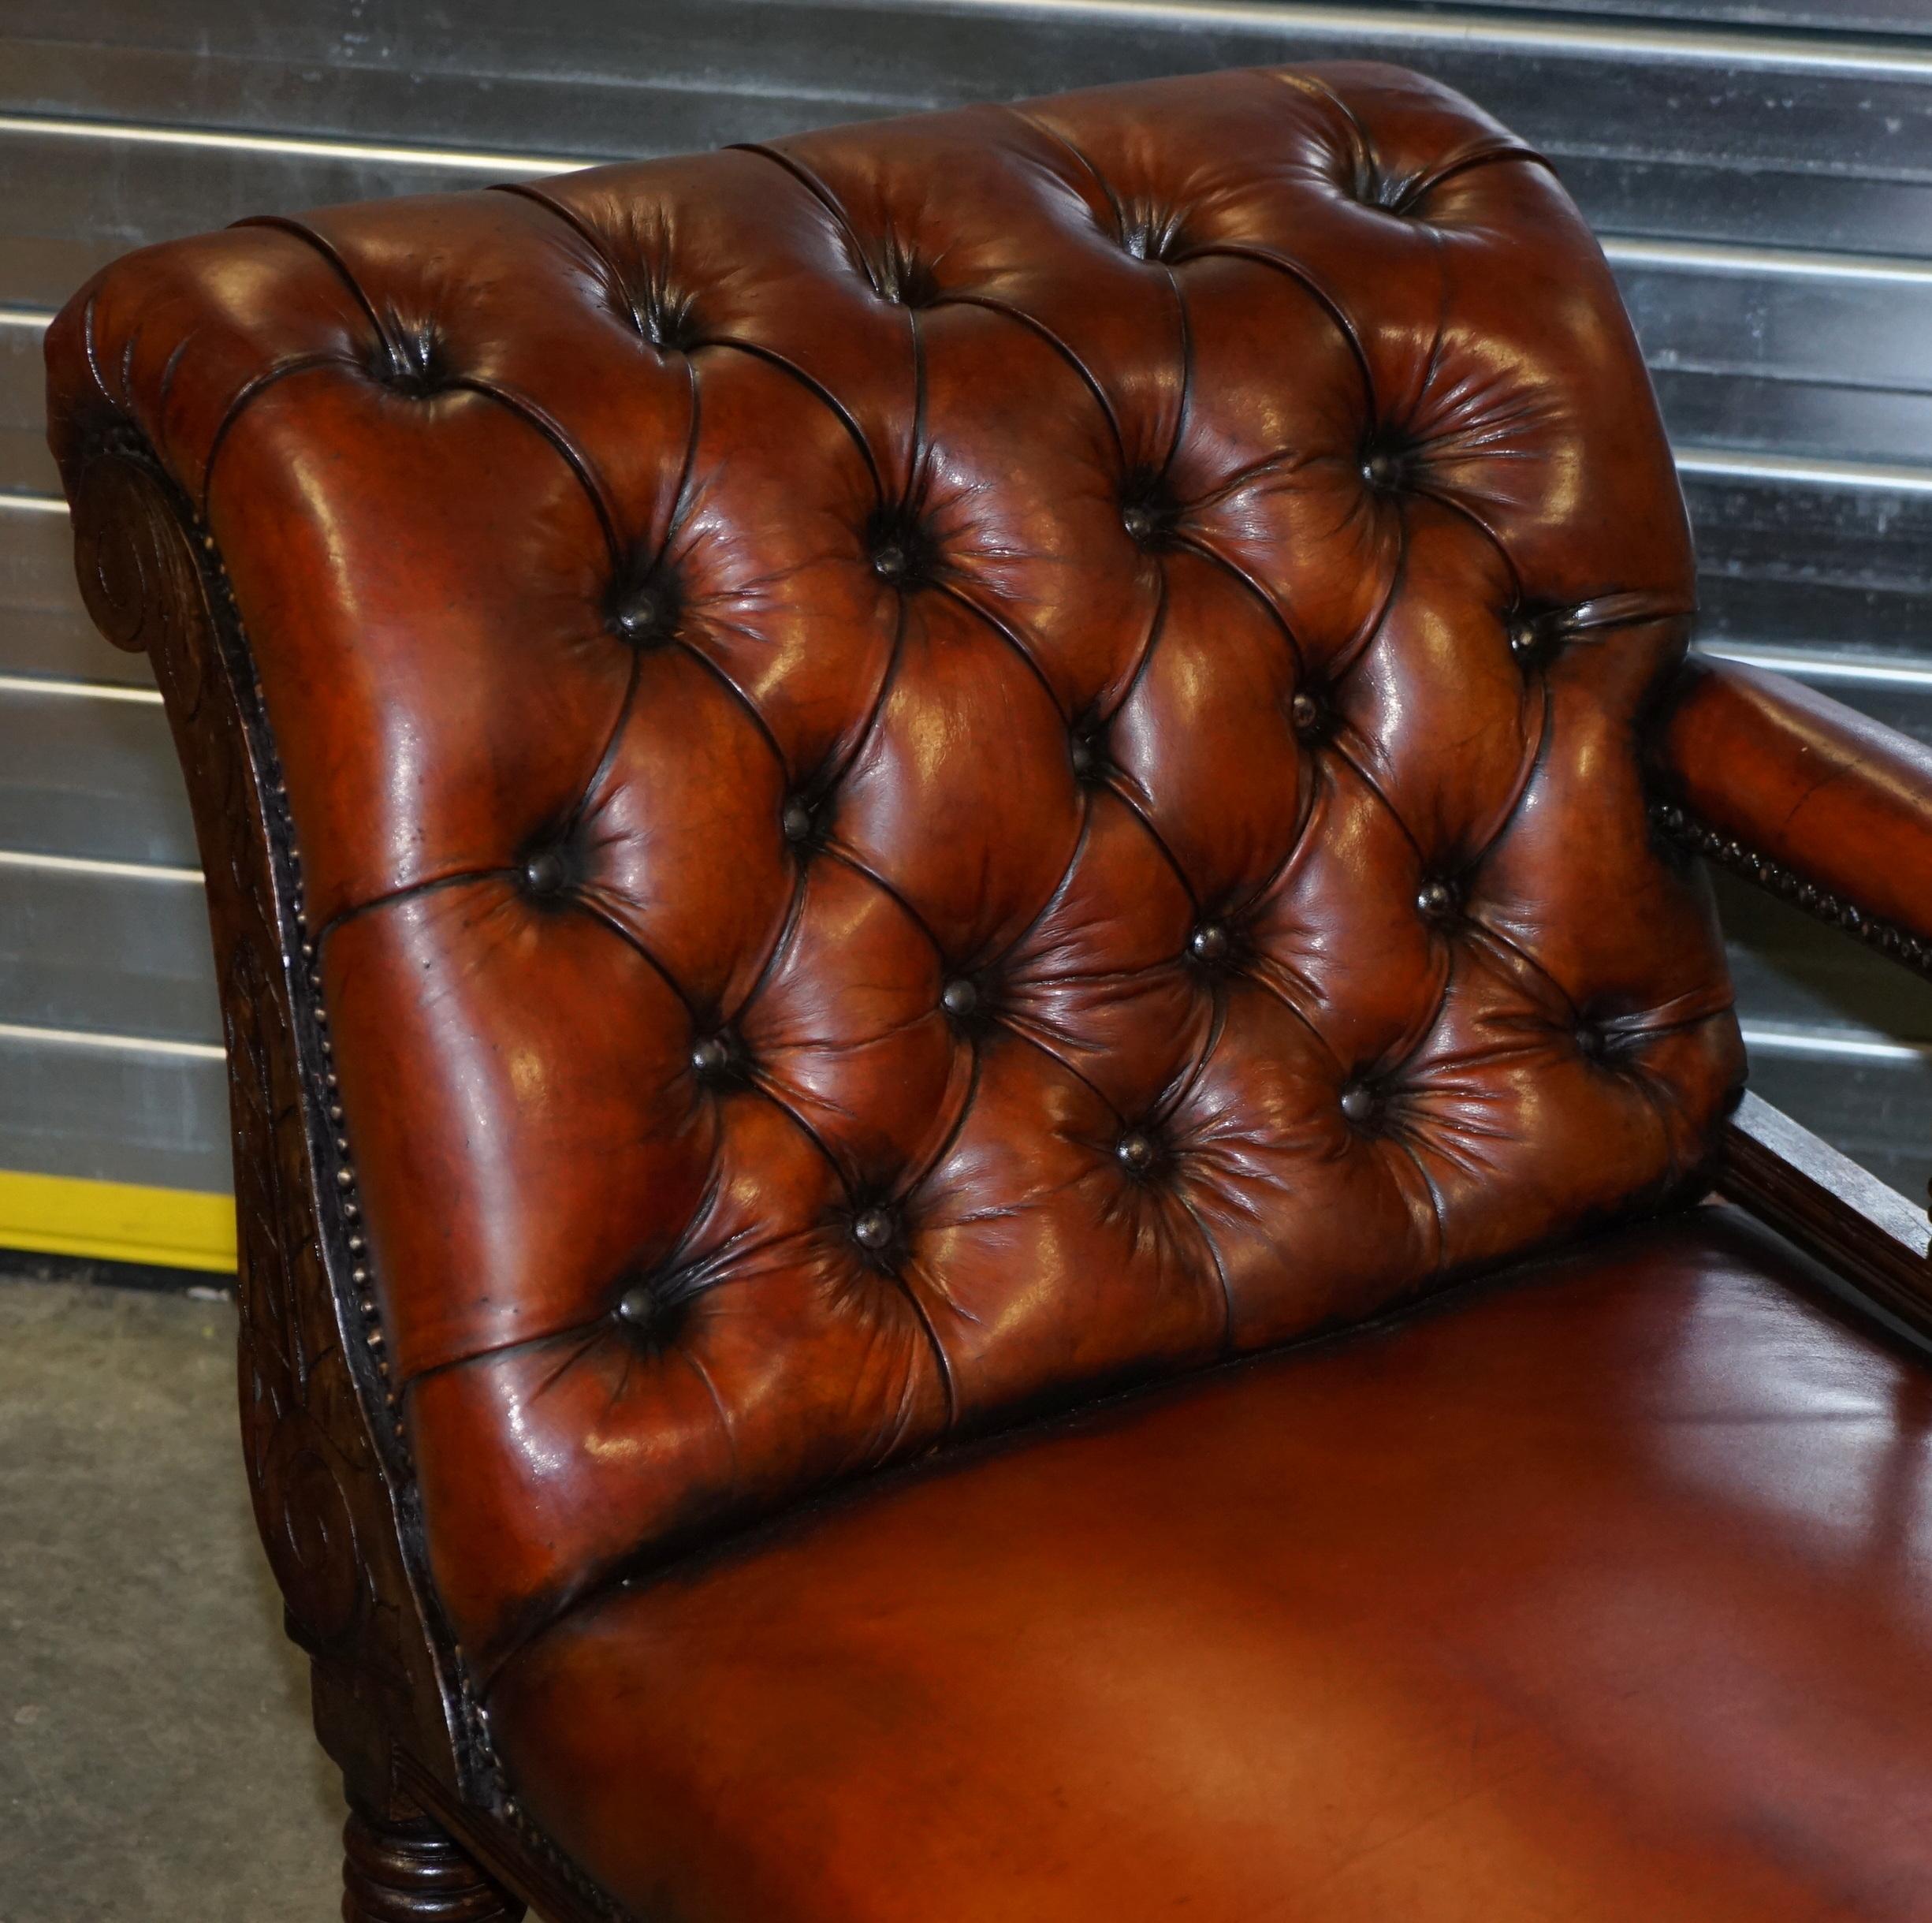 Nous sommes ravis d'offrir à la vente cette charmante chaise longue Chesterfield en cuir marron teint à la main, entièrement restaurée.

Une pièce très belle, bien faite et exceptionnellement confortable. Cette chaise a été entièrement restaurée,